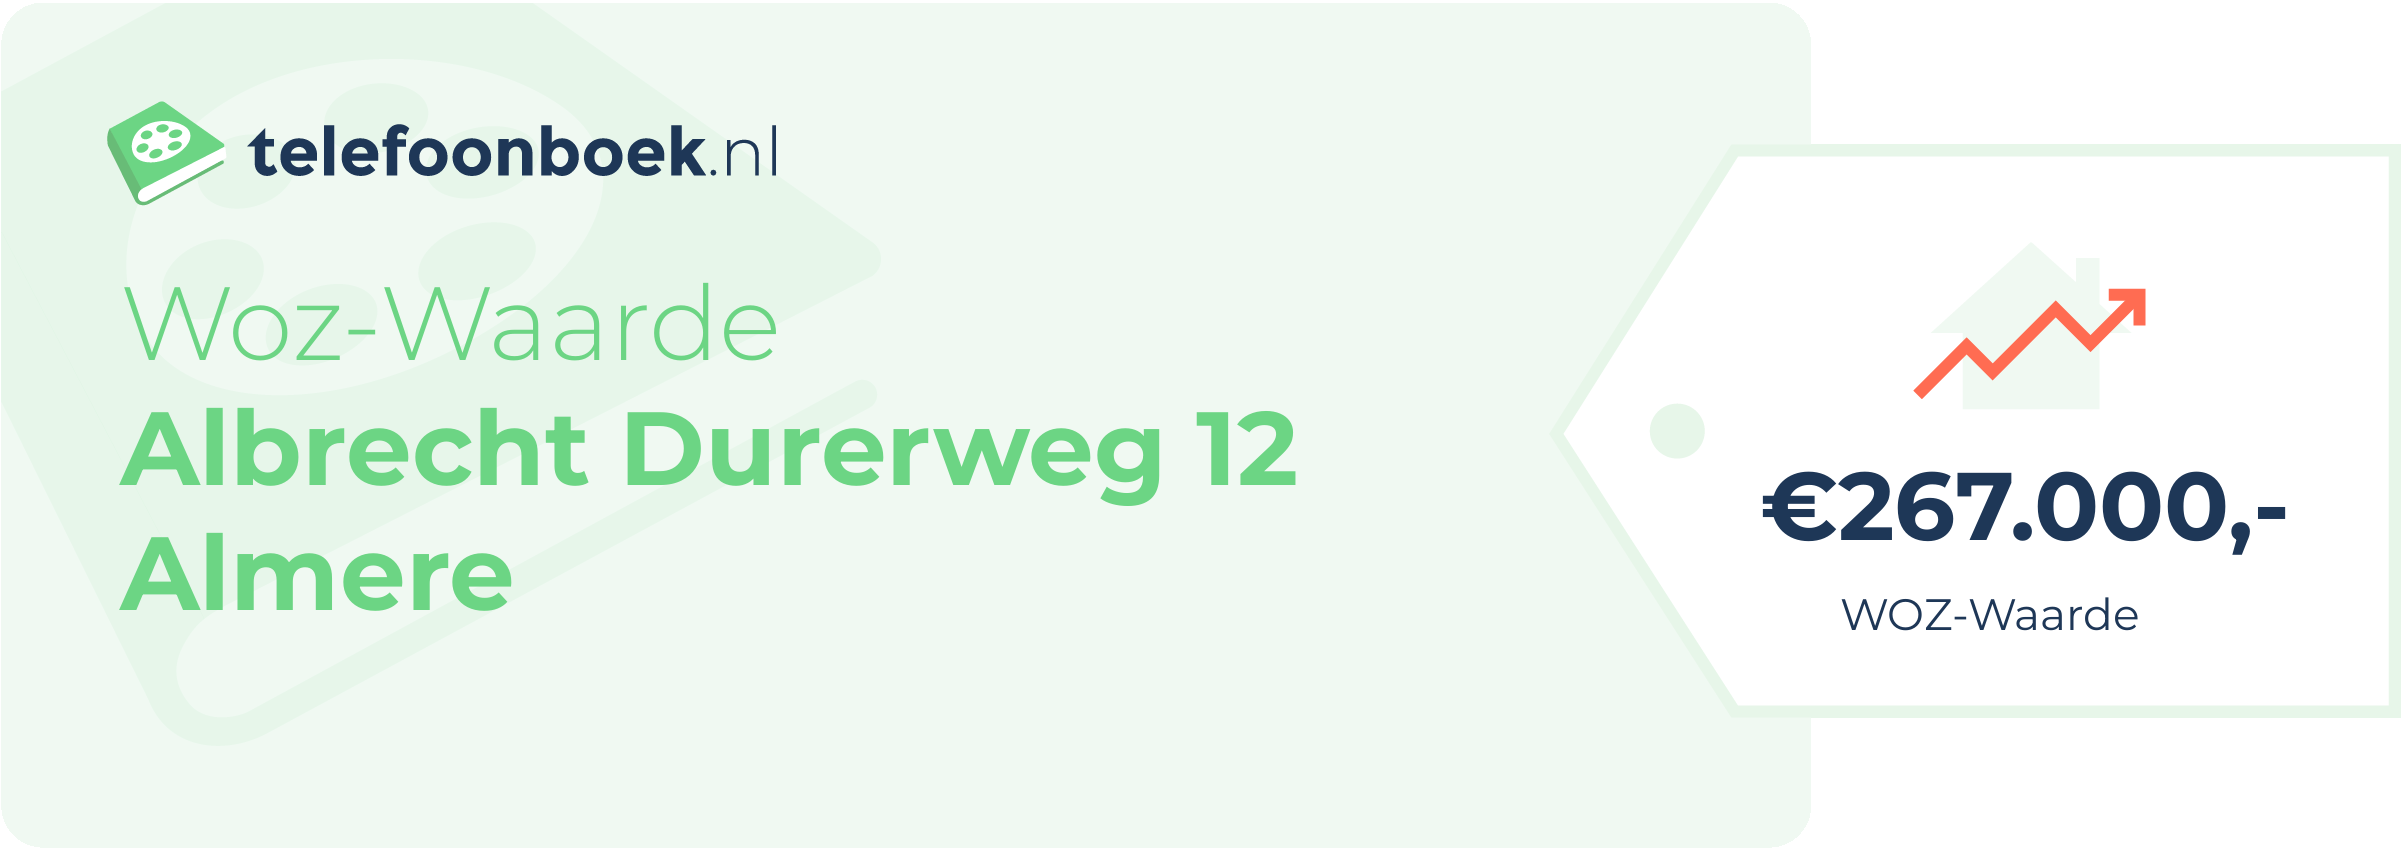 WOZ-waarde Albrecht Durerweg 12 Almere